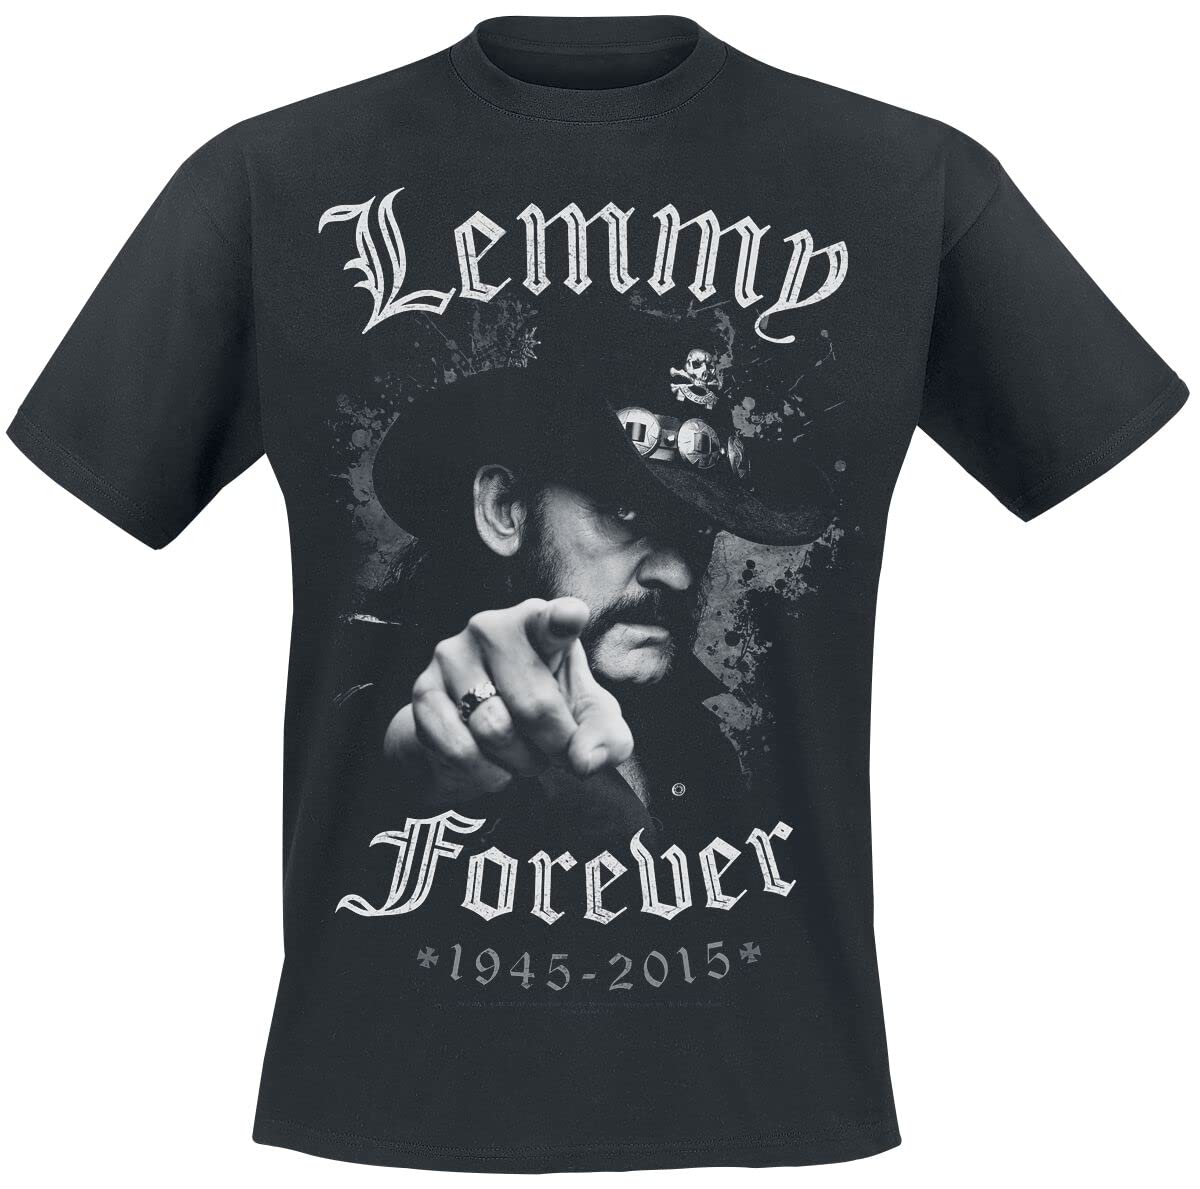 Motörhead Lemmy - Forever Männer T-Shirt schwarz 3XL 100% Baumwolle Band-Merch, Bands